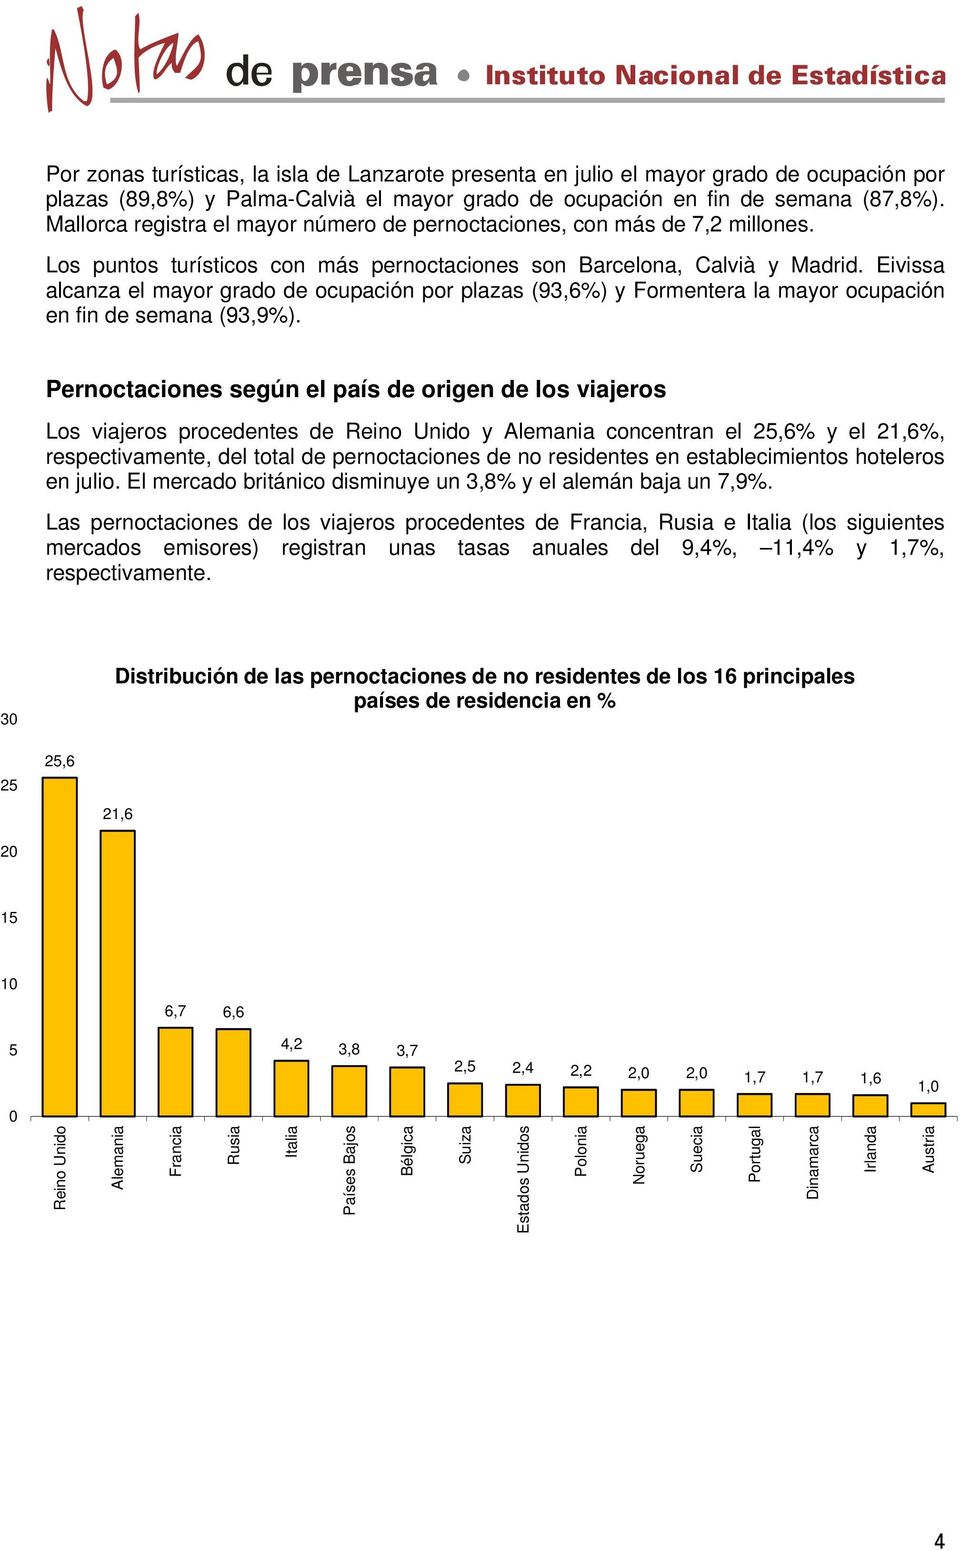 Eivissa alcanza el mayor grado de ocupación por plazas (93,6%) y Formentera la mayor ocupación en fin de semana (93,9%).